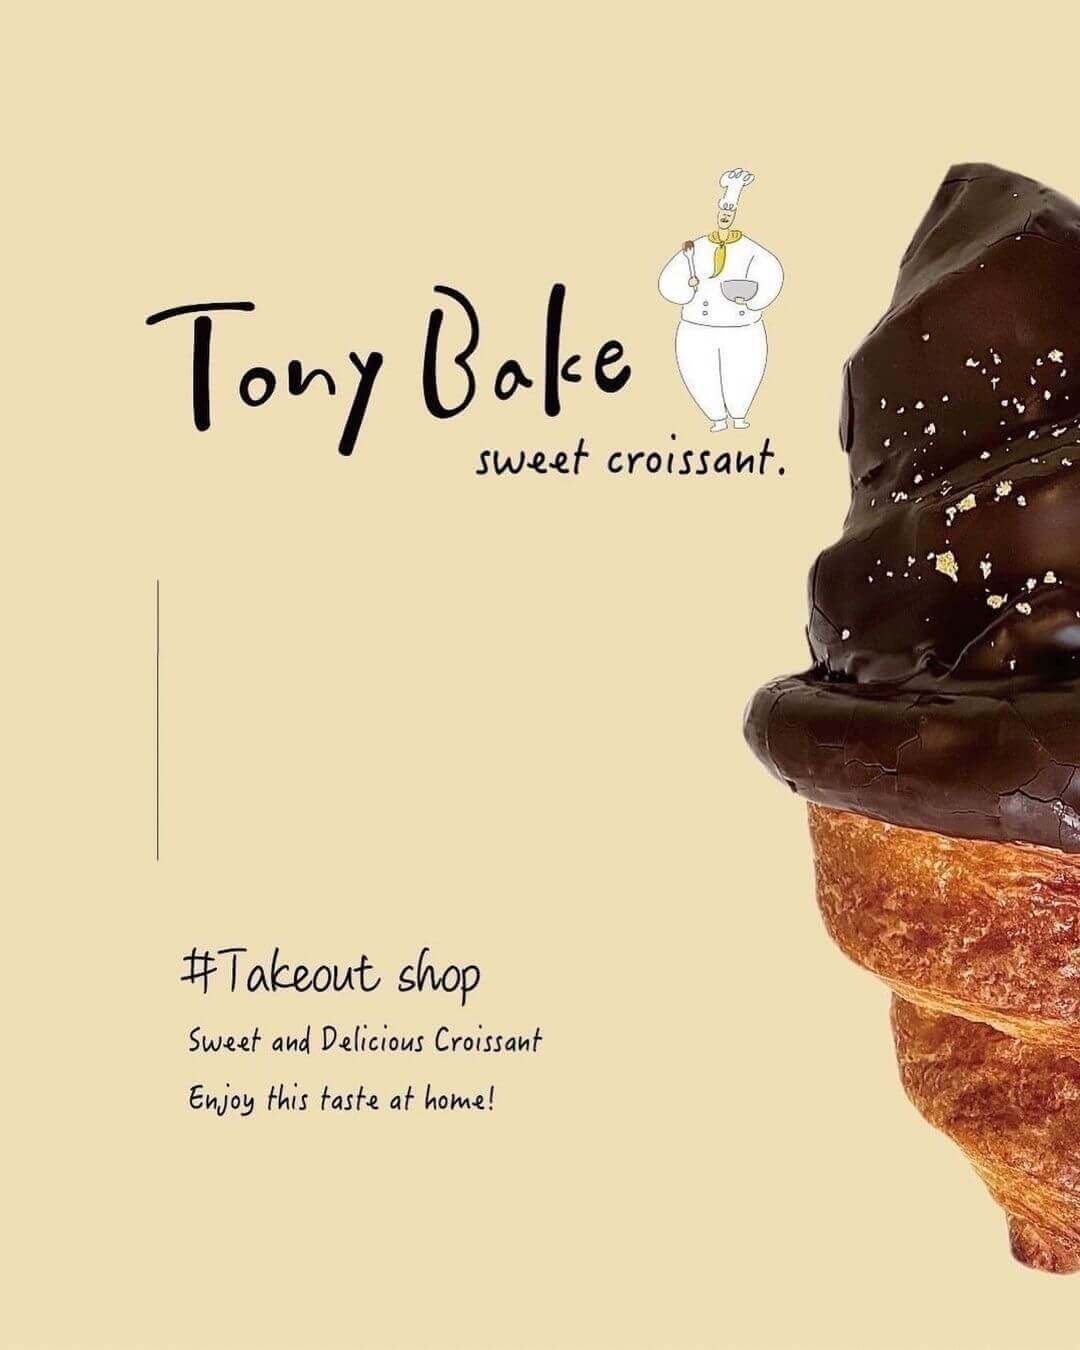 100日だけのチョコクロワッサンby Tony Bake大丸札幌店